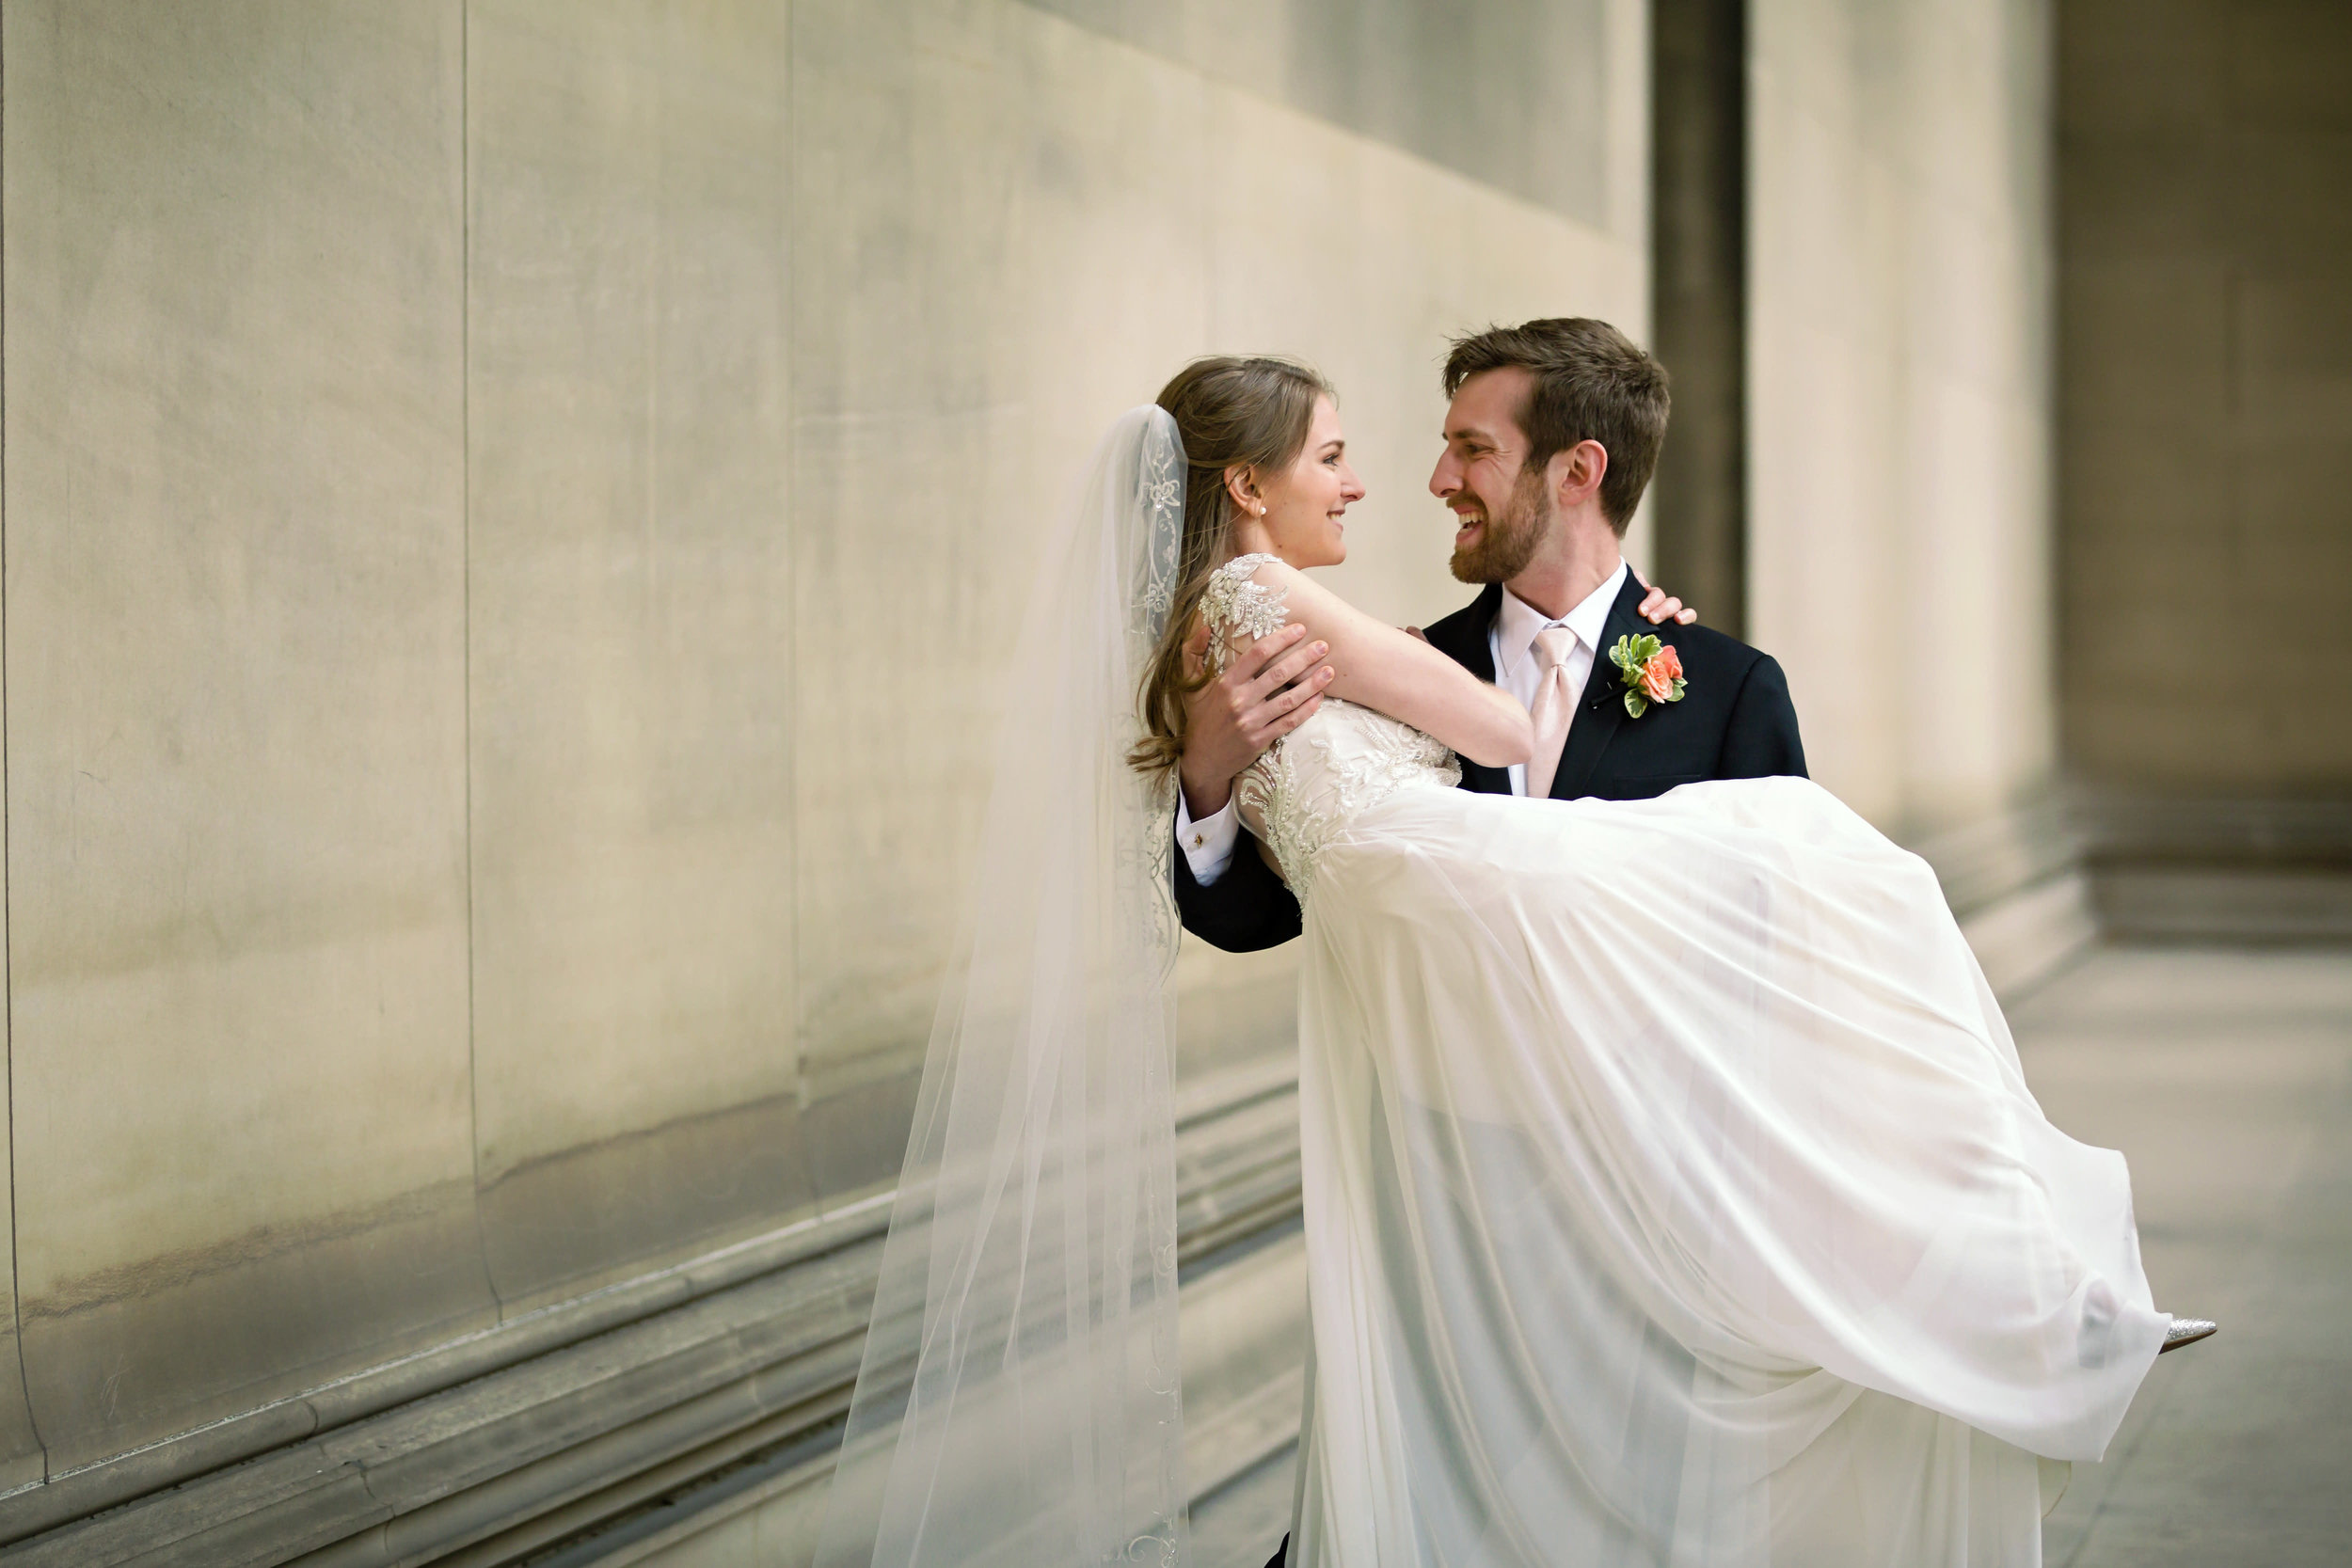 Omni William Penn Hotel Pittsburgh Wedding - The Overwhelmed Bride Wedding Blog